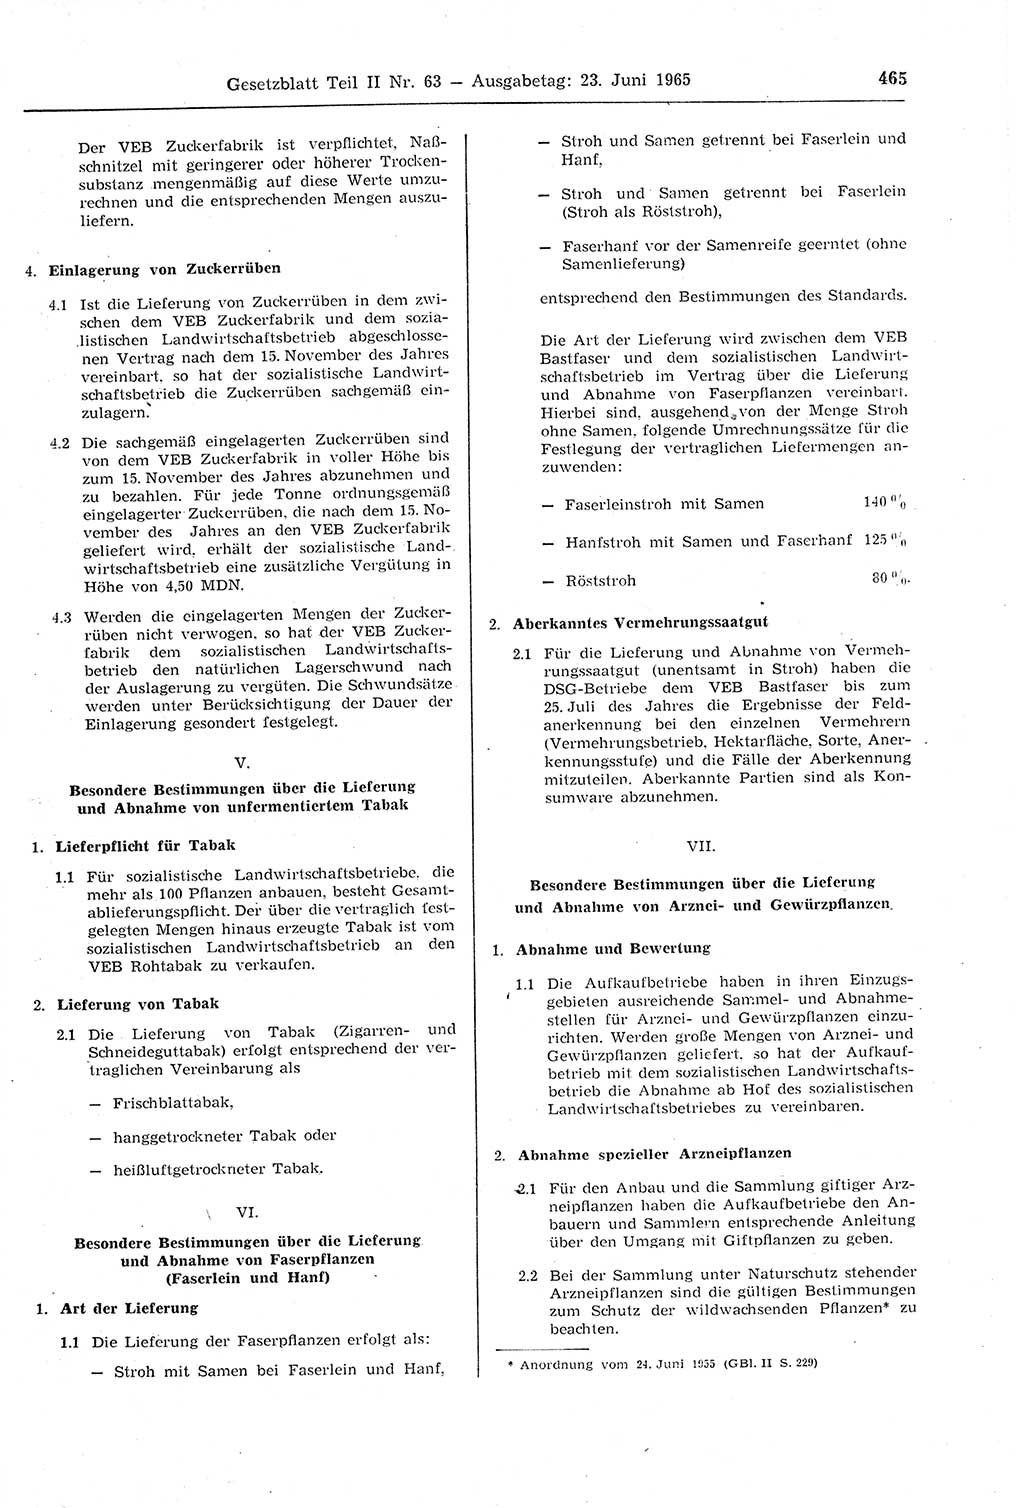 Gesetzblatt (GBl.) der Deutschen Demokratischen Republik (DDR) Teil ⅠⅠ 1965, Seite 465 (GBl. DDR ⅠⅠ 1965, S. 465)